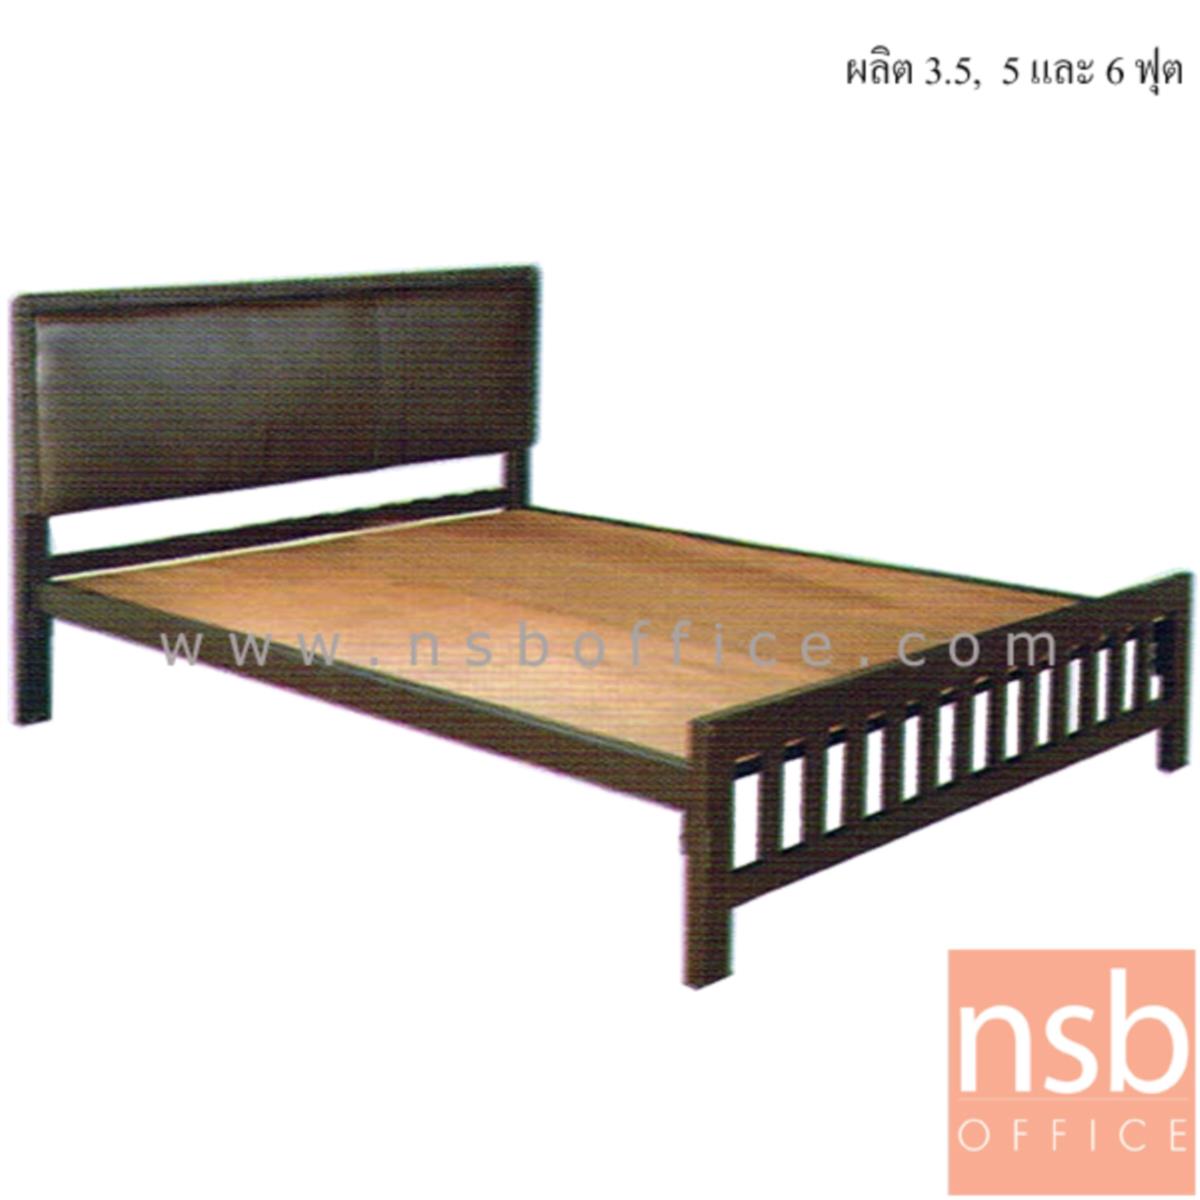 G11A260:เตียงเหล็ก หัวเตียงสูงบุหนังเทียม  รุ่น Rosemarie (โรสแมรี) (ผลิต 3.5, 5 และ 6 ฟุต) พร้อมแผ่นไม้ปูเตียง